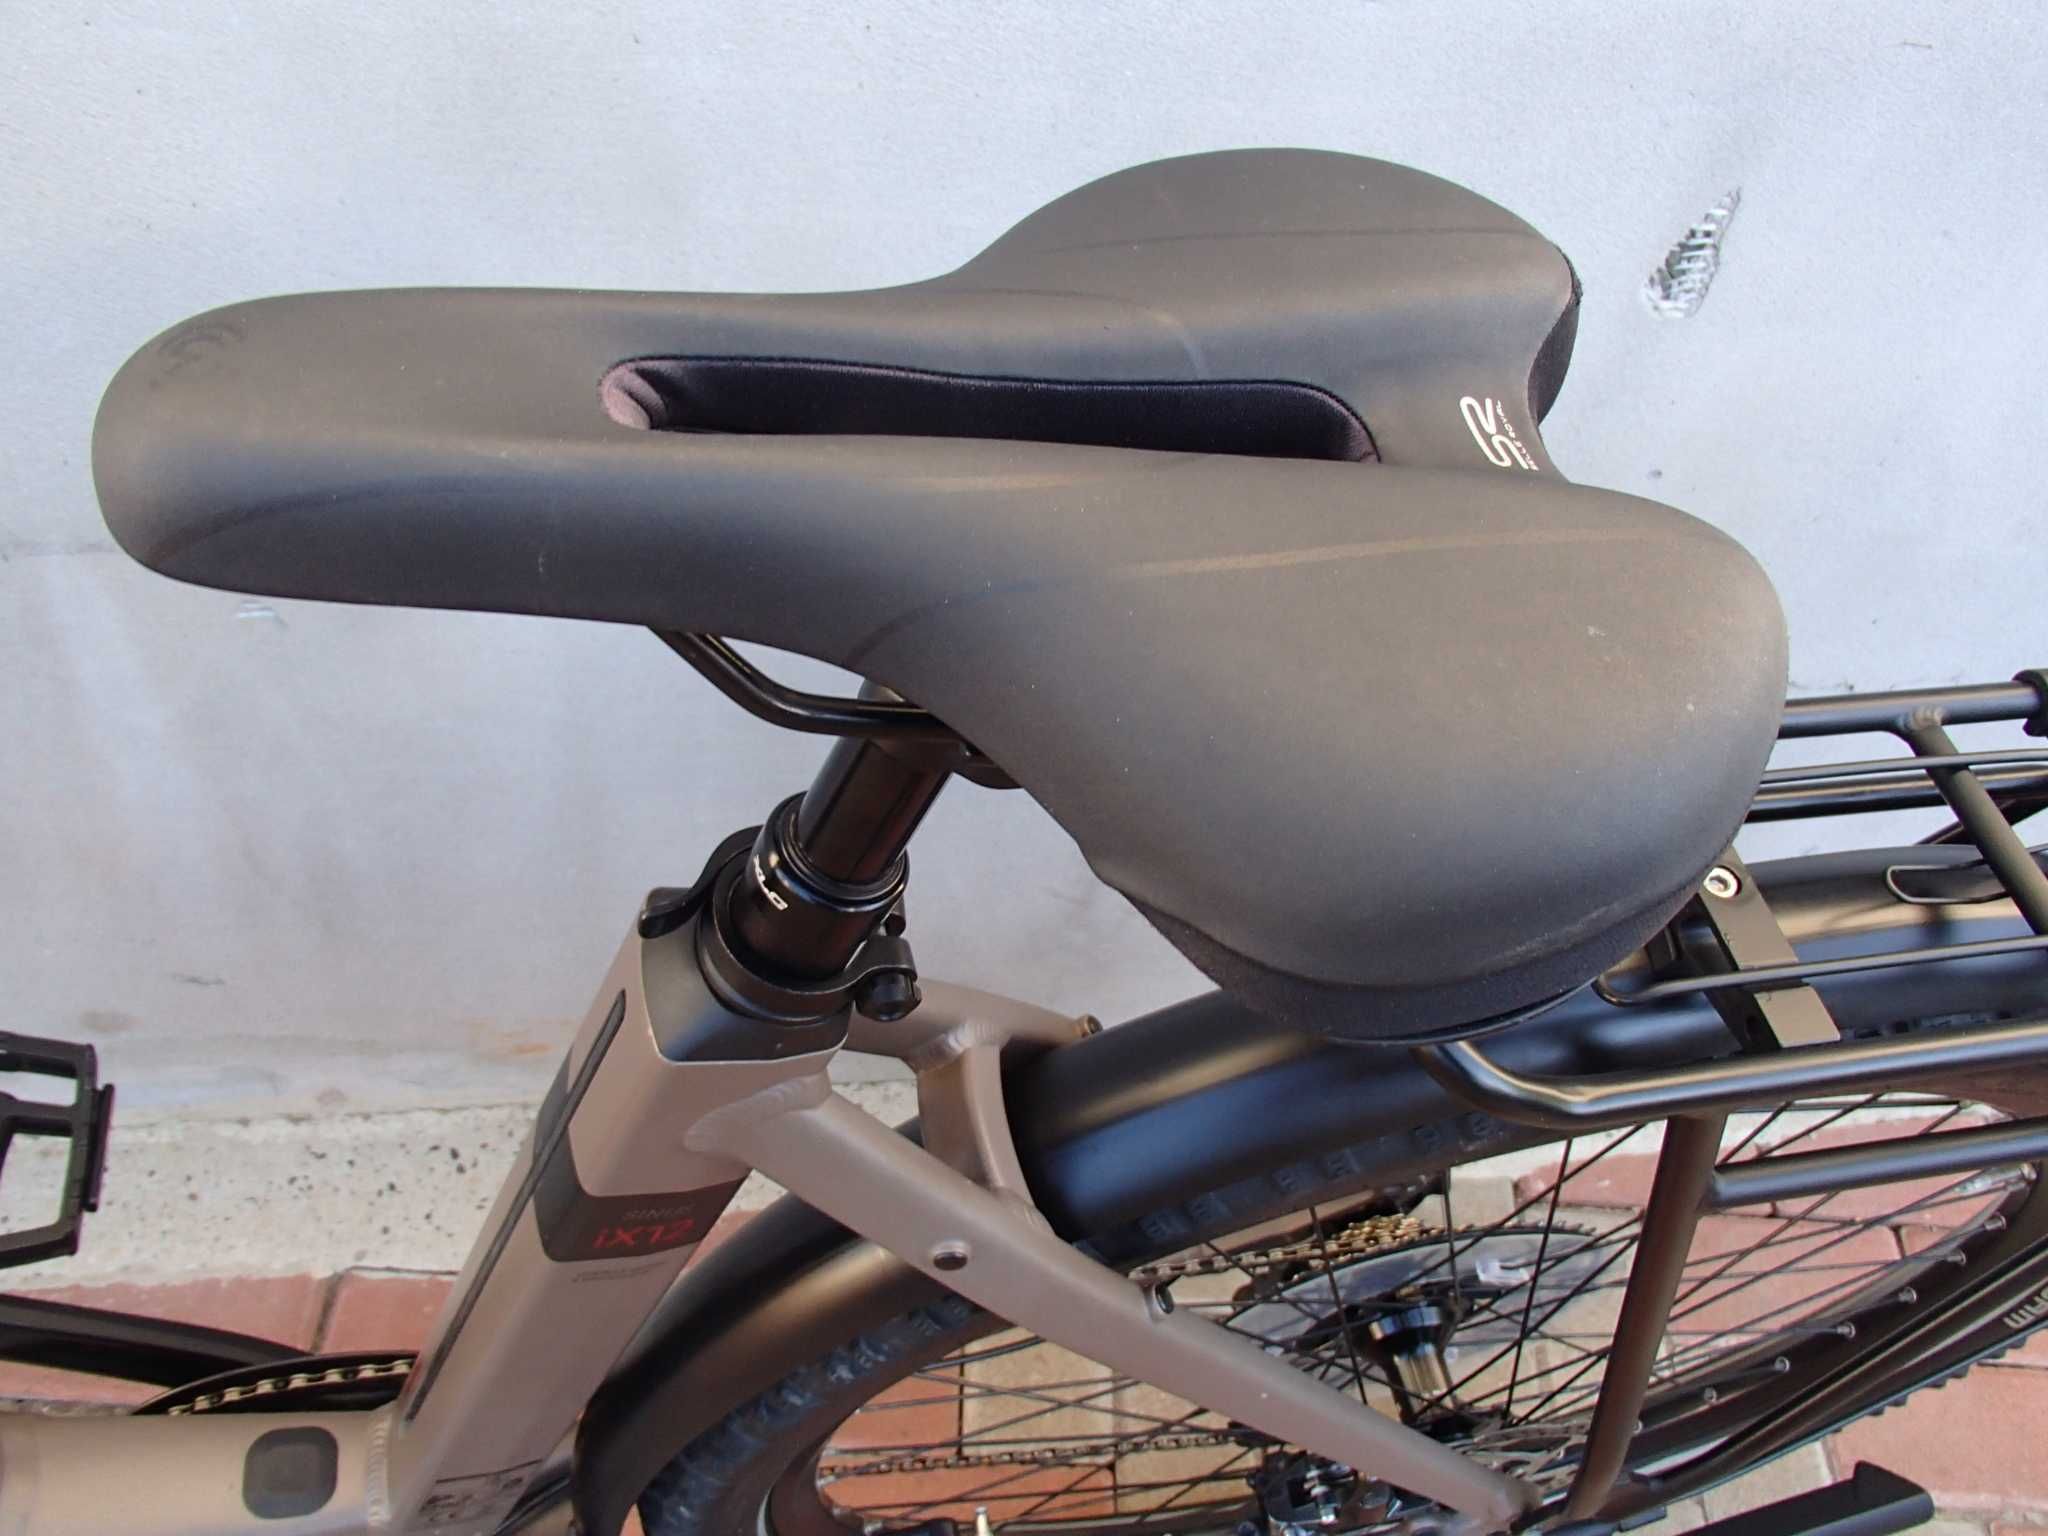 Bicicleta electrica Cu Motor Boscx Cx,Model nou,Full XT, 1x12